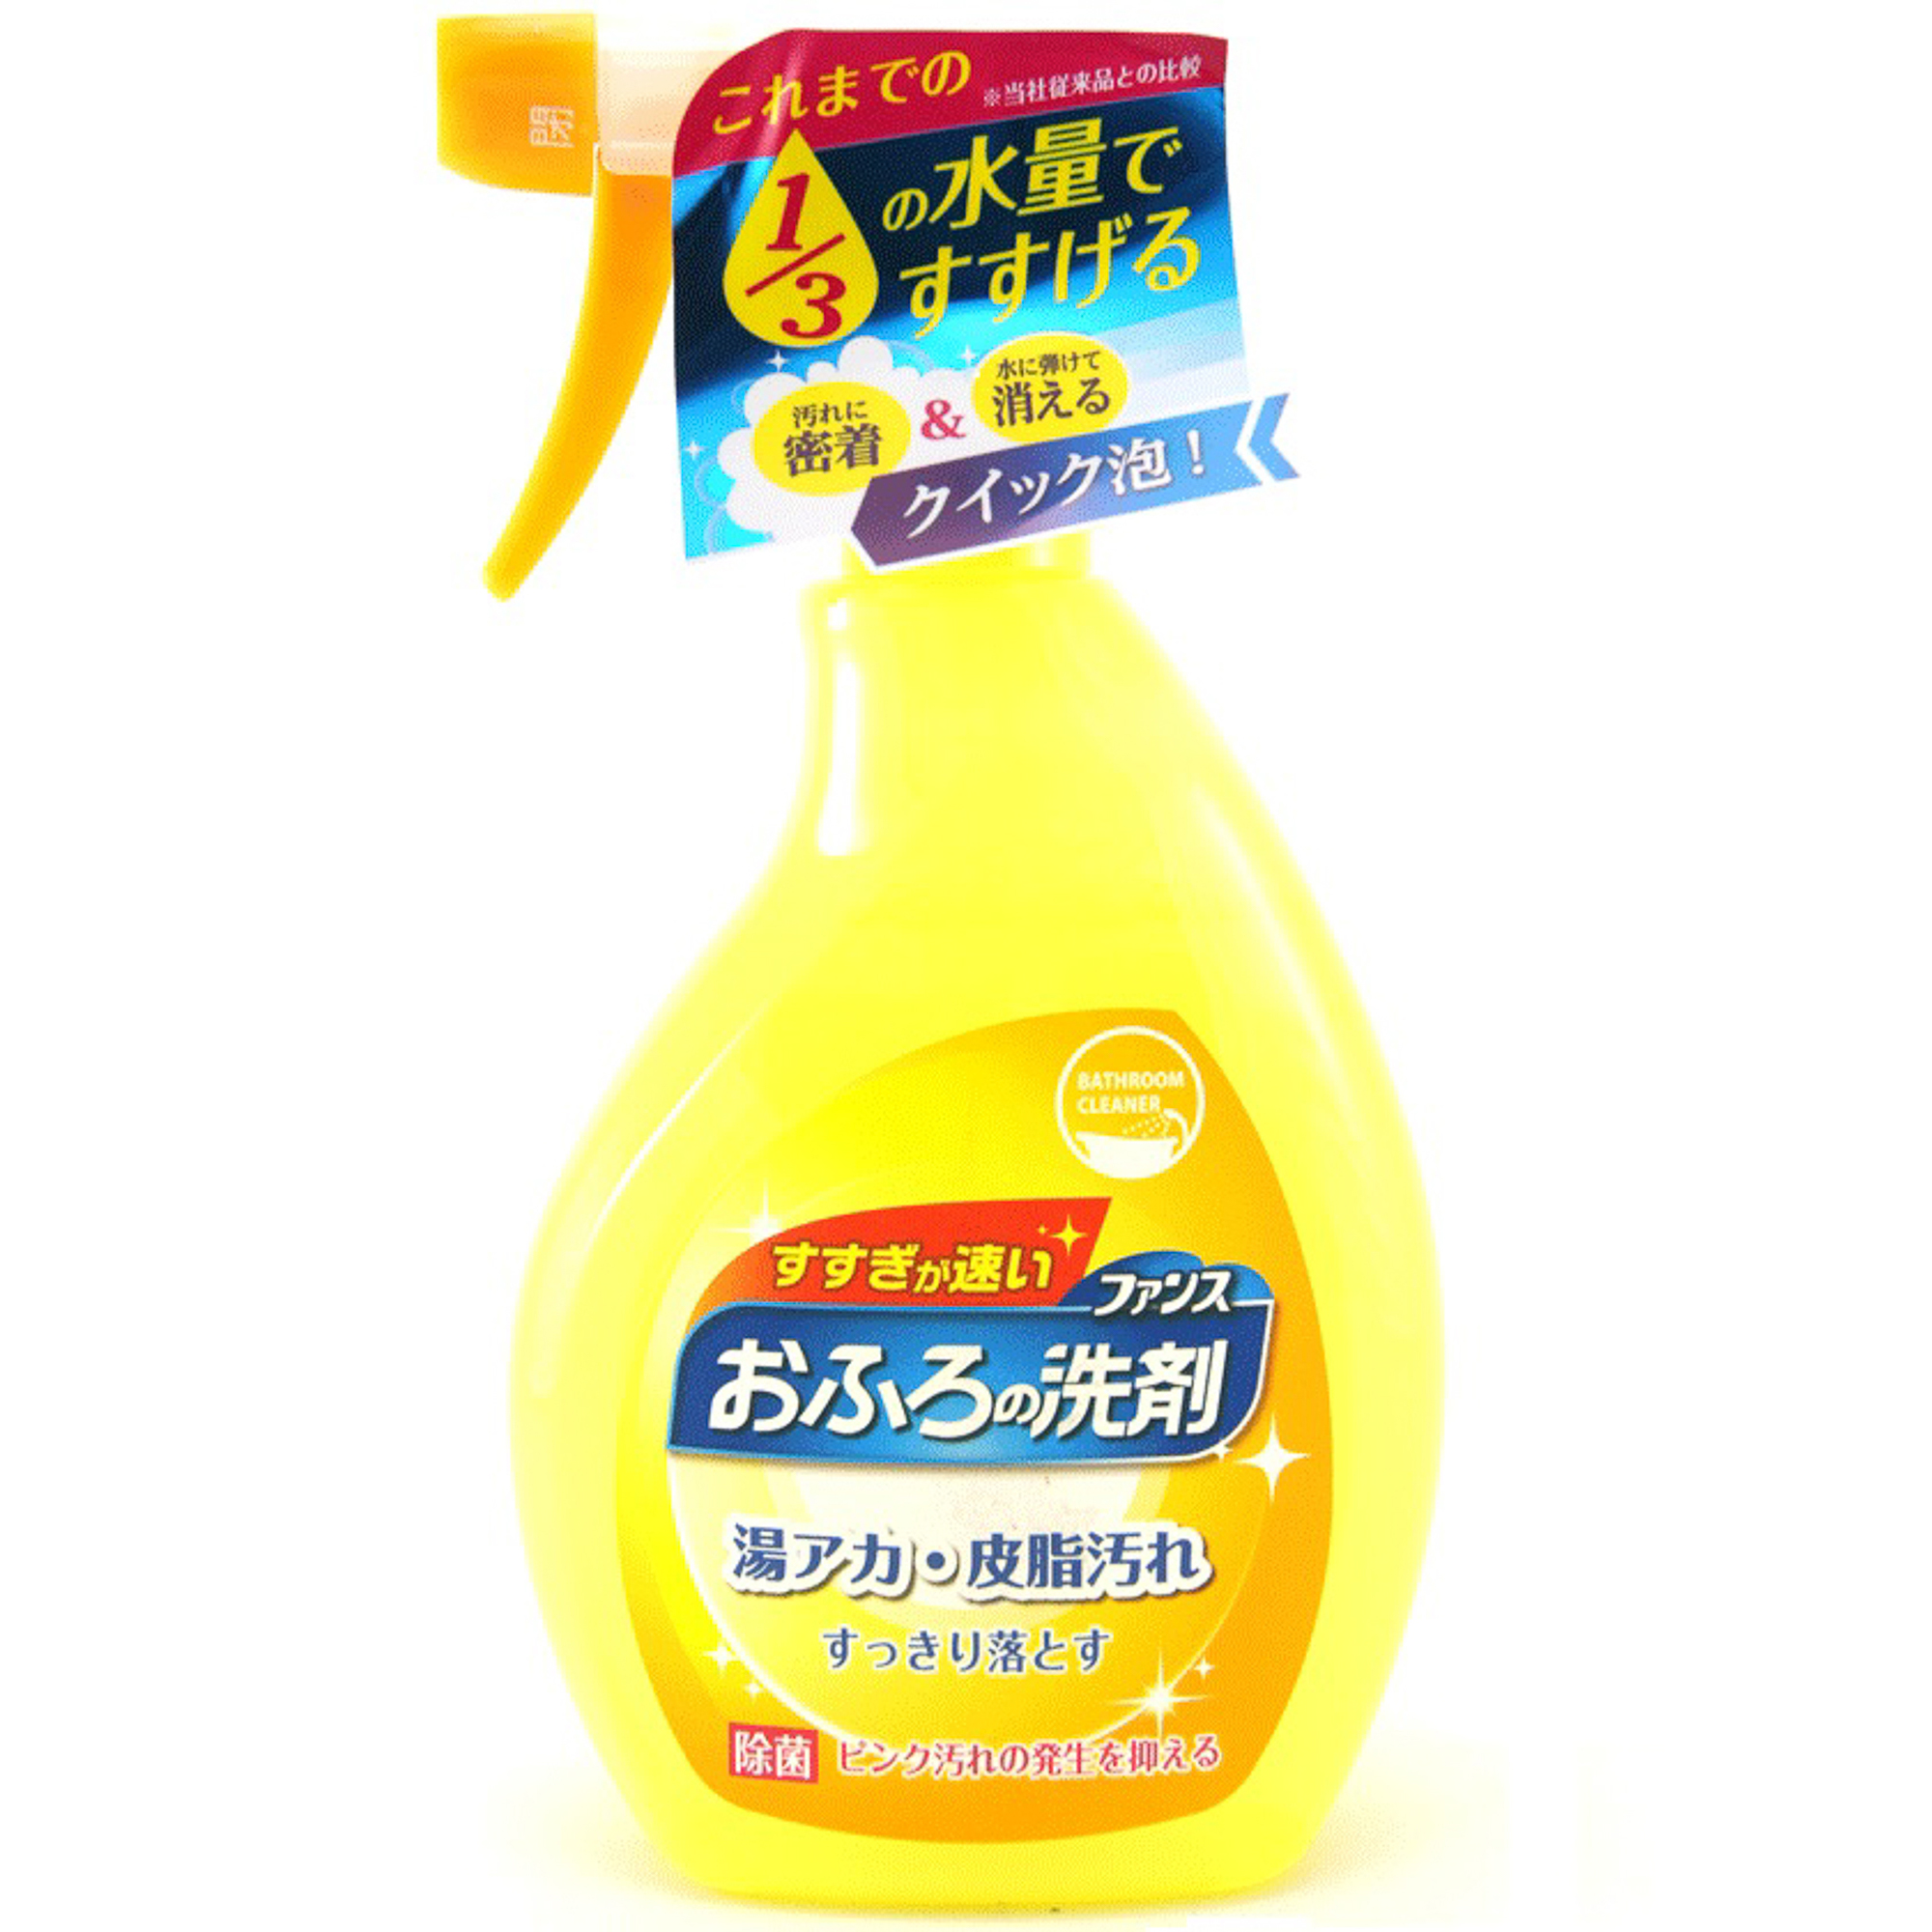 Спрей пенный Daiichi Ofuro для чистки в ванной комнате 380 мл фито спрей nordland для чистки стеклянных поверхностей 750 мл